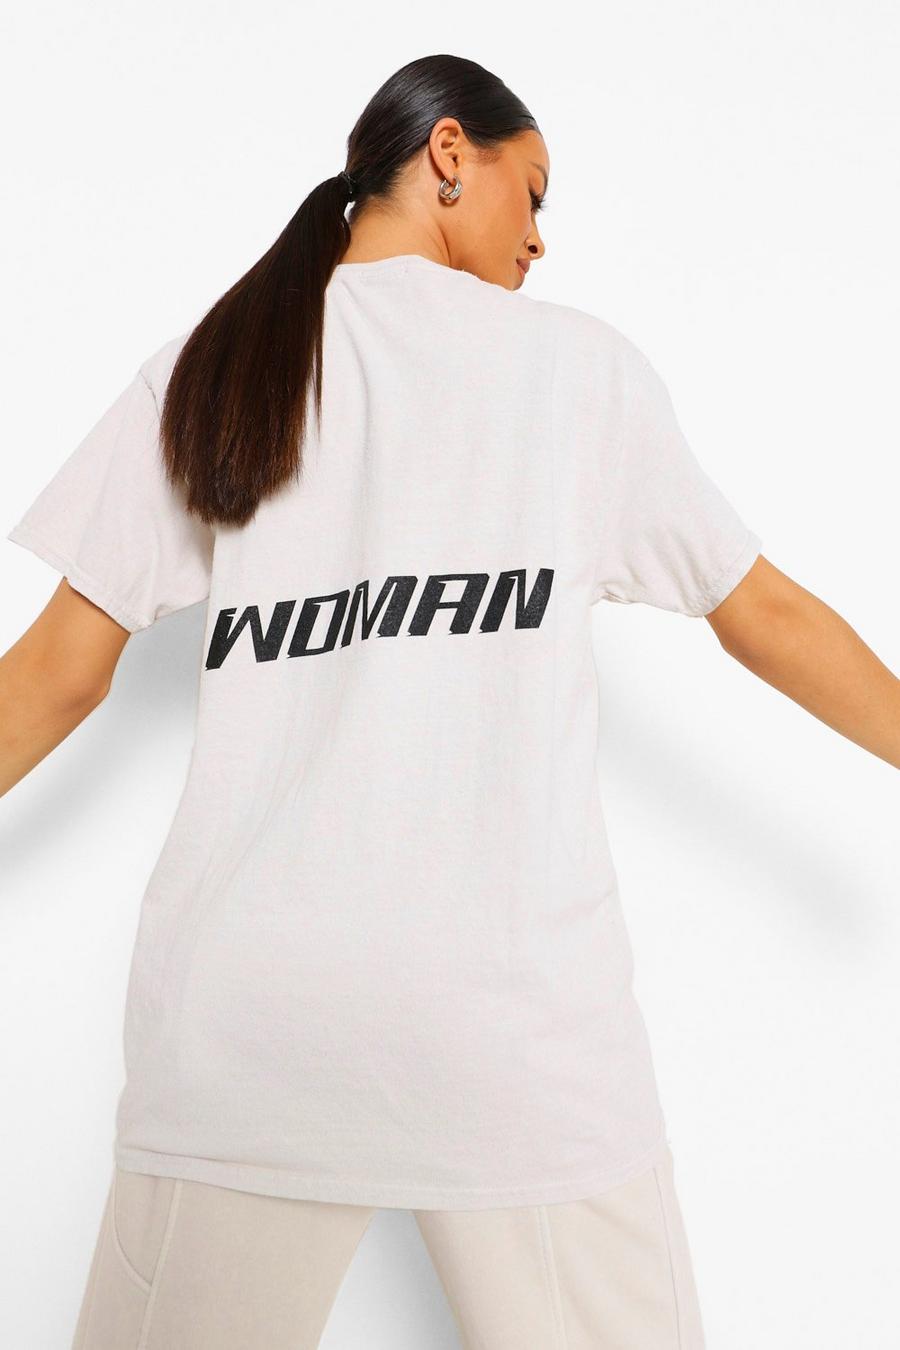 Camiseta extragrande con desteñido tipo ácido y estampado Woman en la espalda, Crema image number 1